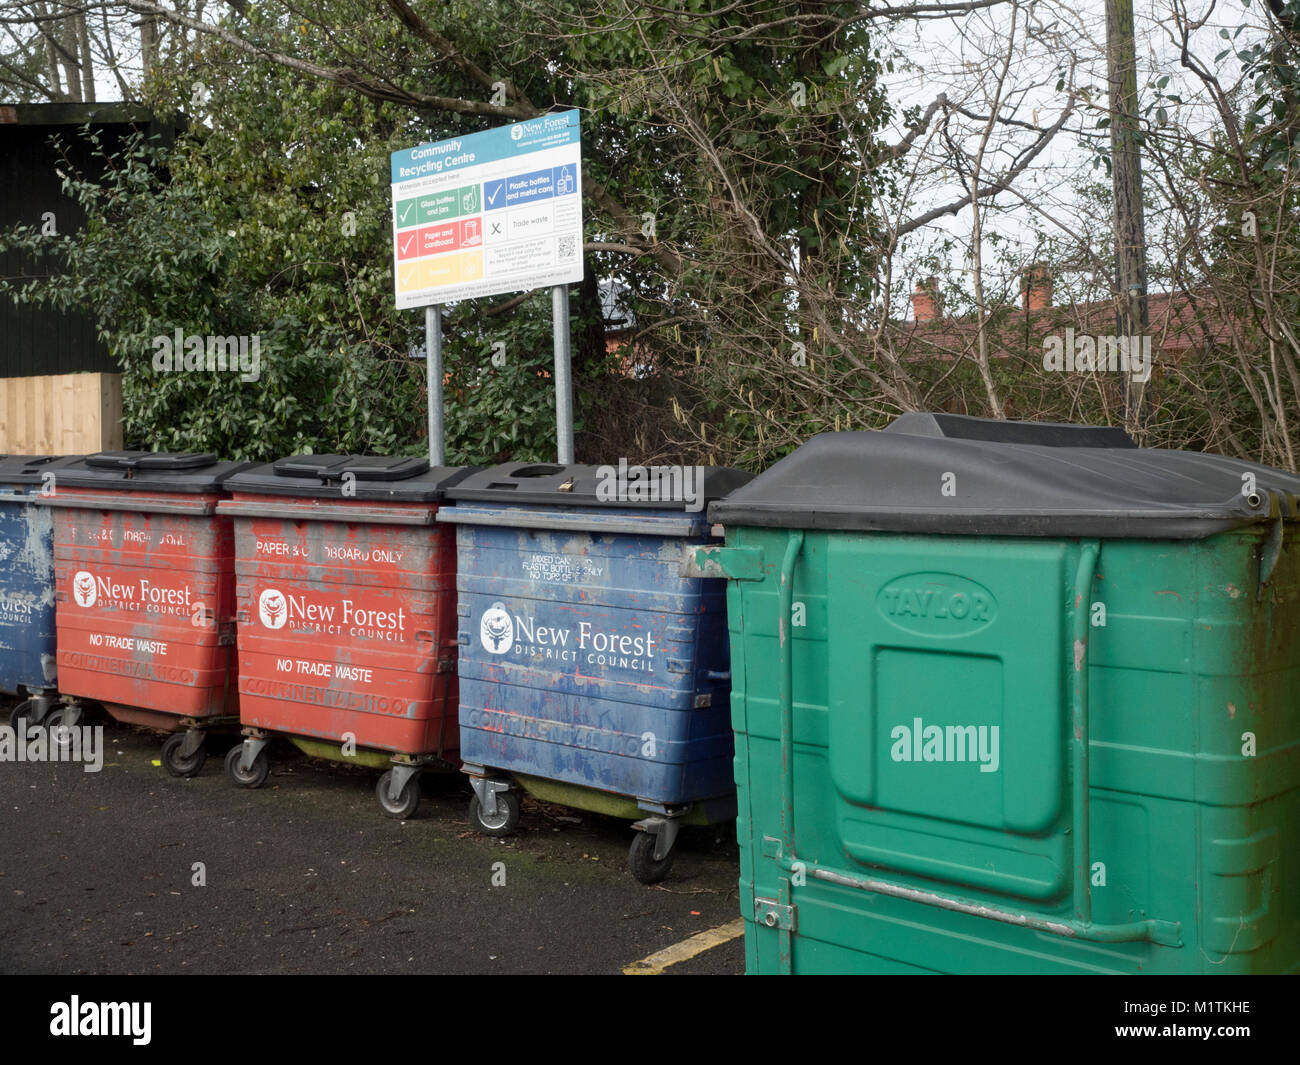 Nuova Foresta del Consiglio Distrettuale degli scomparti di riciclaggio nel parcheggio principale, centro città, Lyndhurst, Hampshire, Inghilterra, Regno Unito Foto Stock